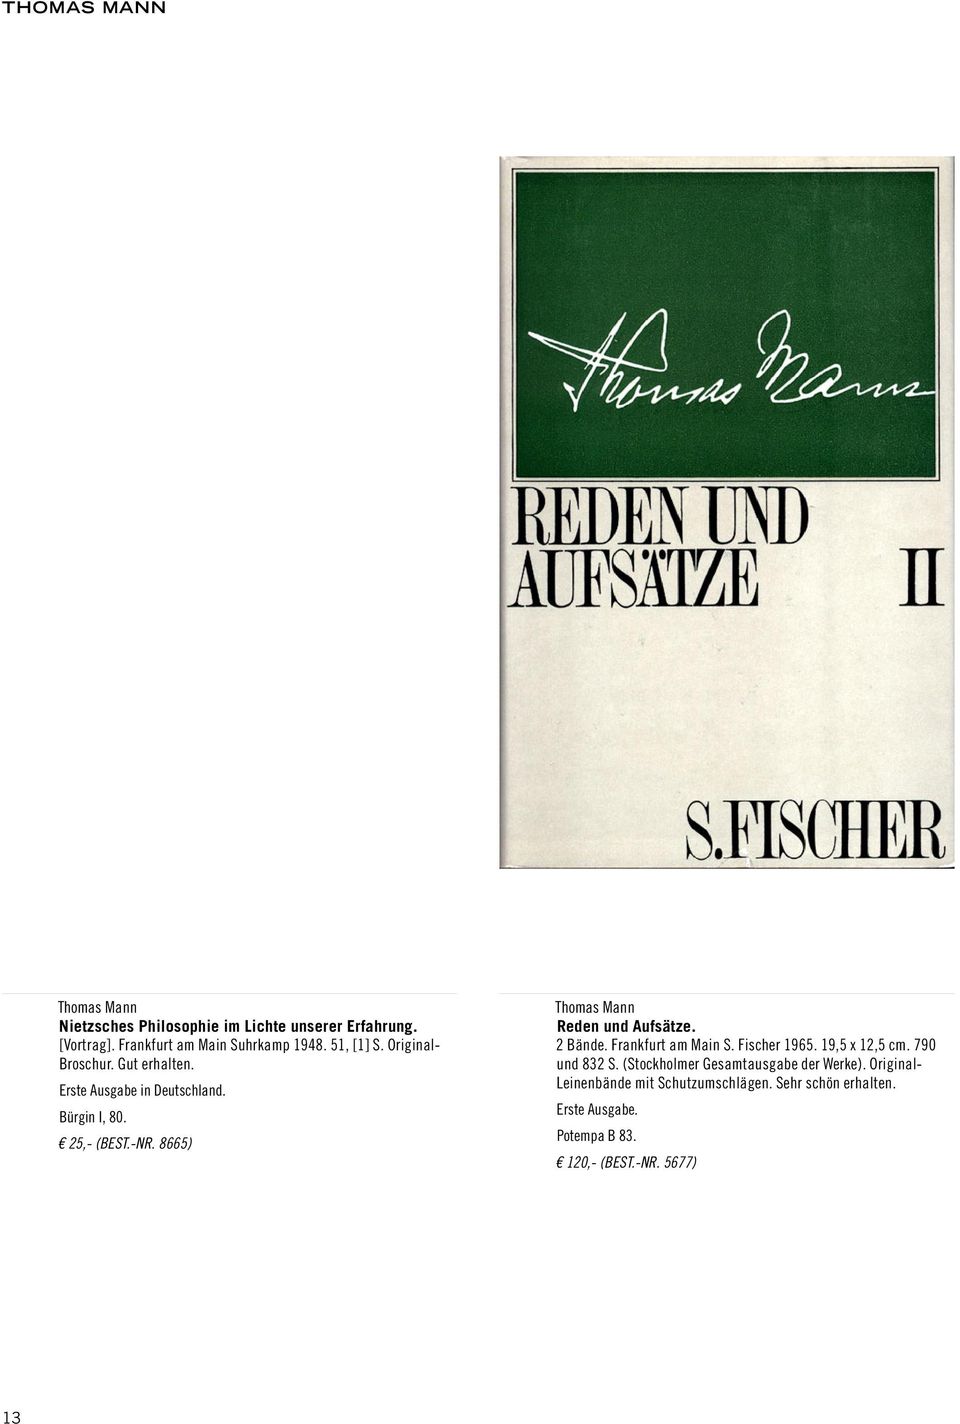 8665) Reden und Aufsätze. 2 Bände. Frankfurt am Main S. Fischer 1965. 19,5 x 12,5 cm. 790 und 832 S.